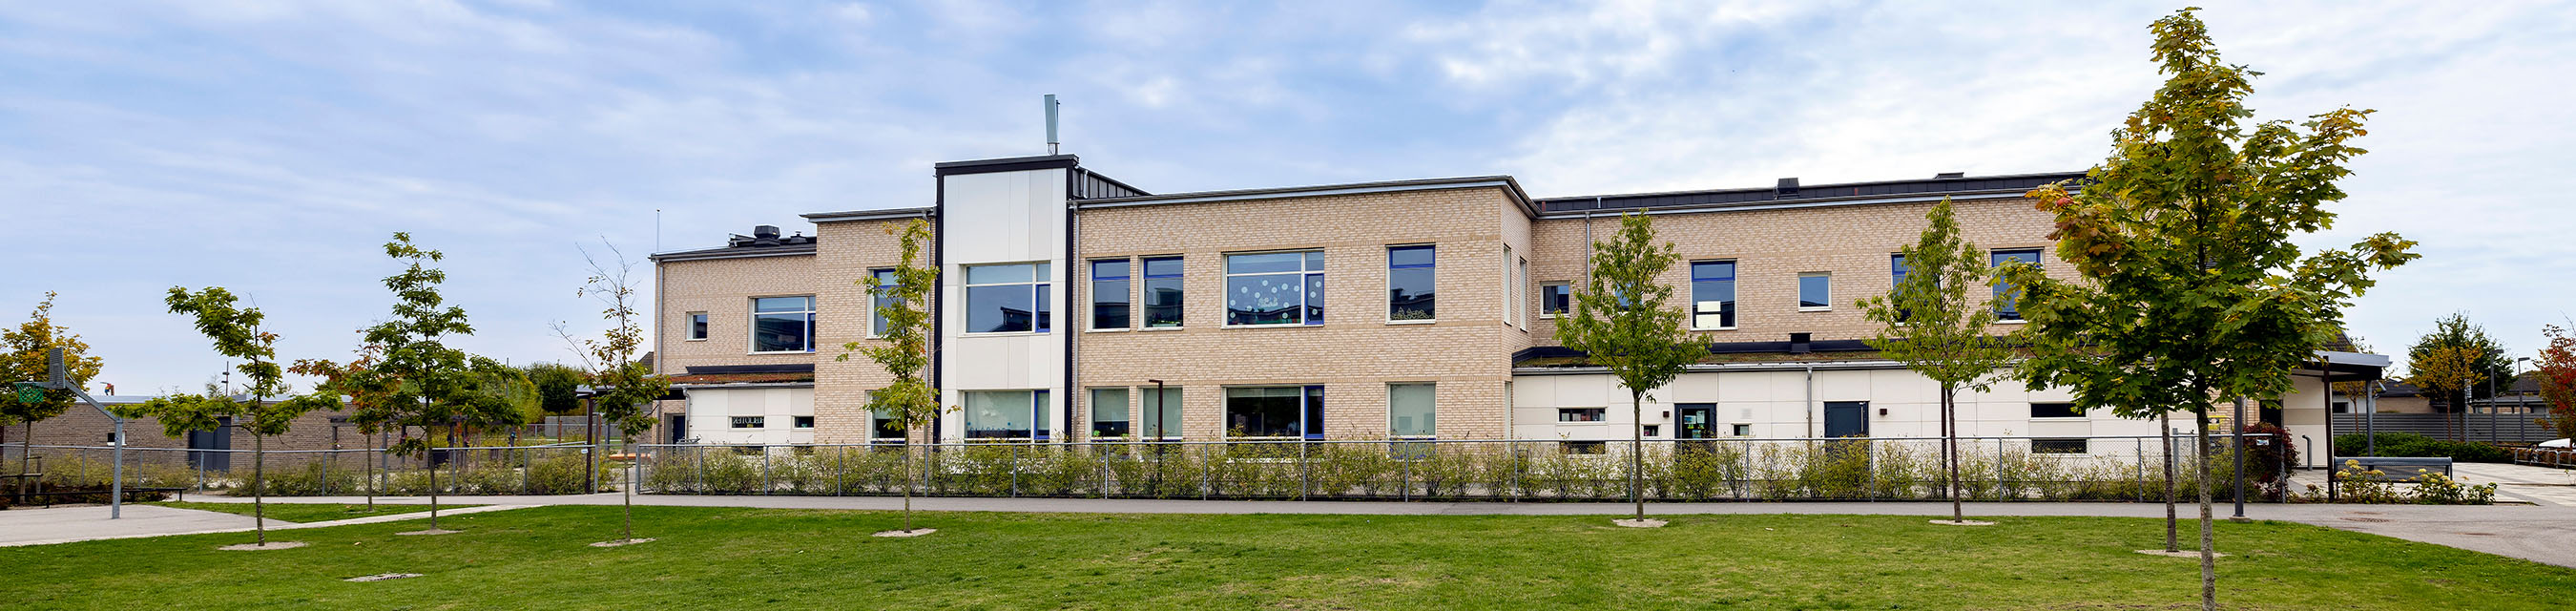 Bladbaggens förskola är byggd i två plan och har en stor gård för omväxlande aktiviteter. 